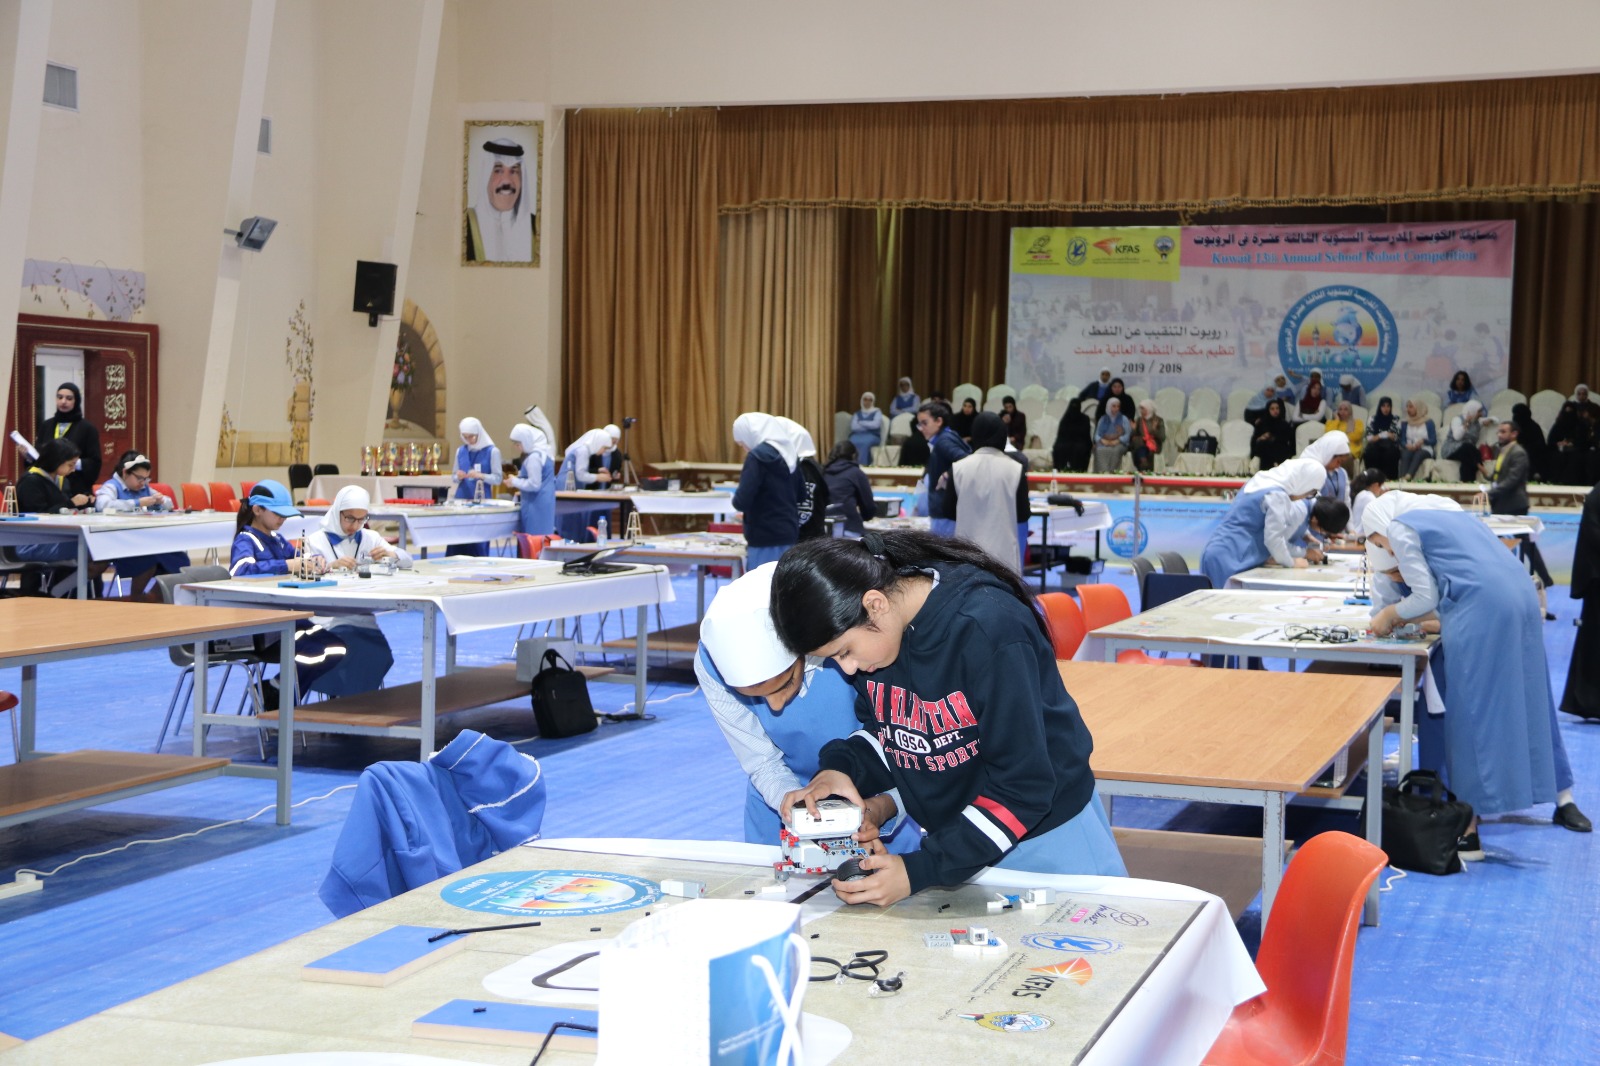 جانب من منافسات مسابقة الكويت المدرسية السنوية للروبوت ال13 (روبوت التنقيب عن النفط) للعام الدراسي الحالي